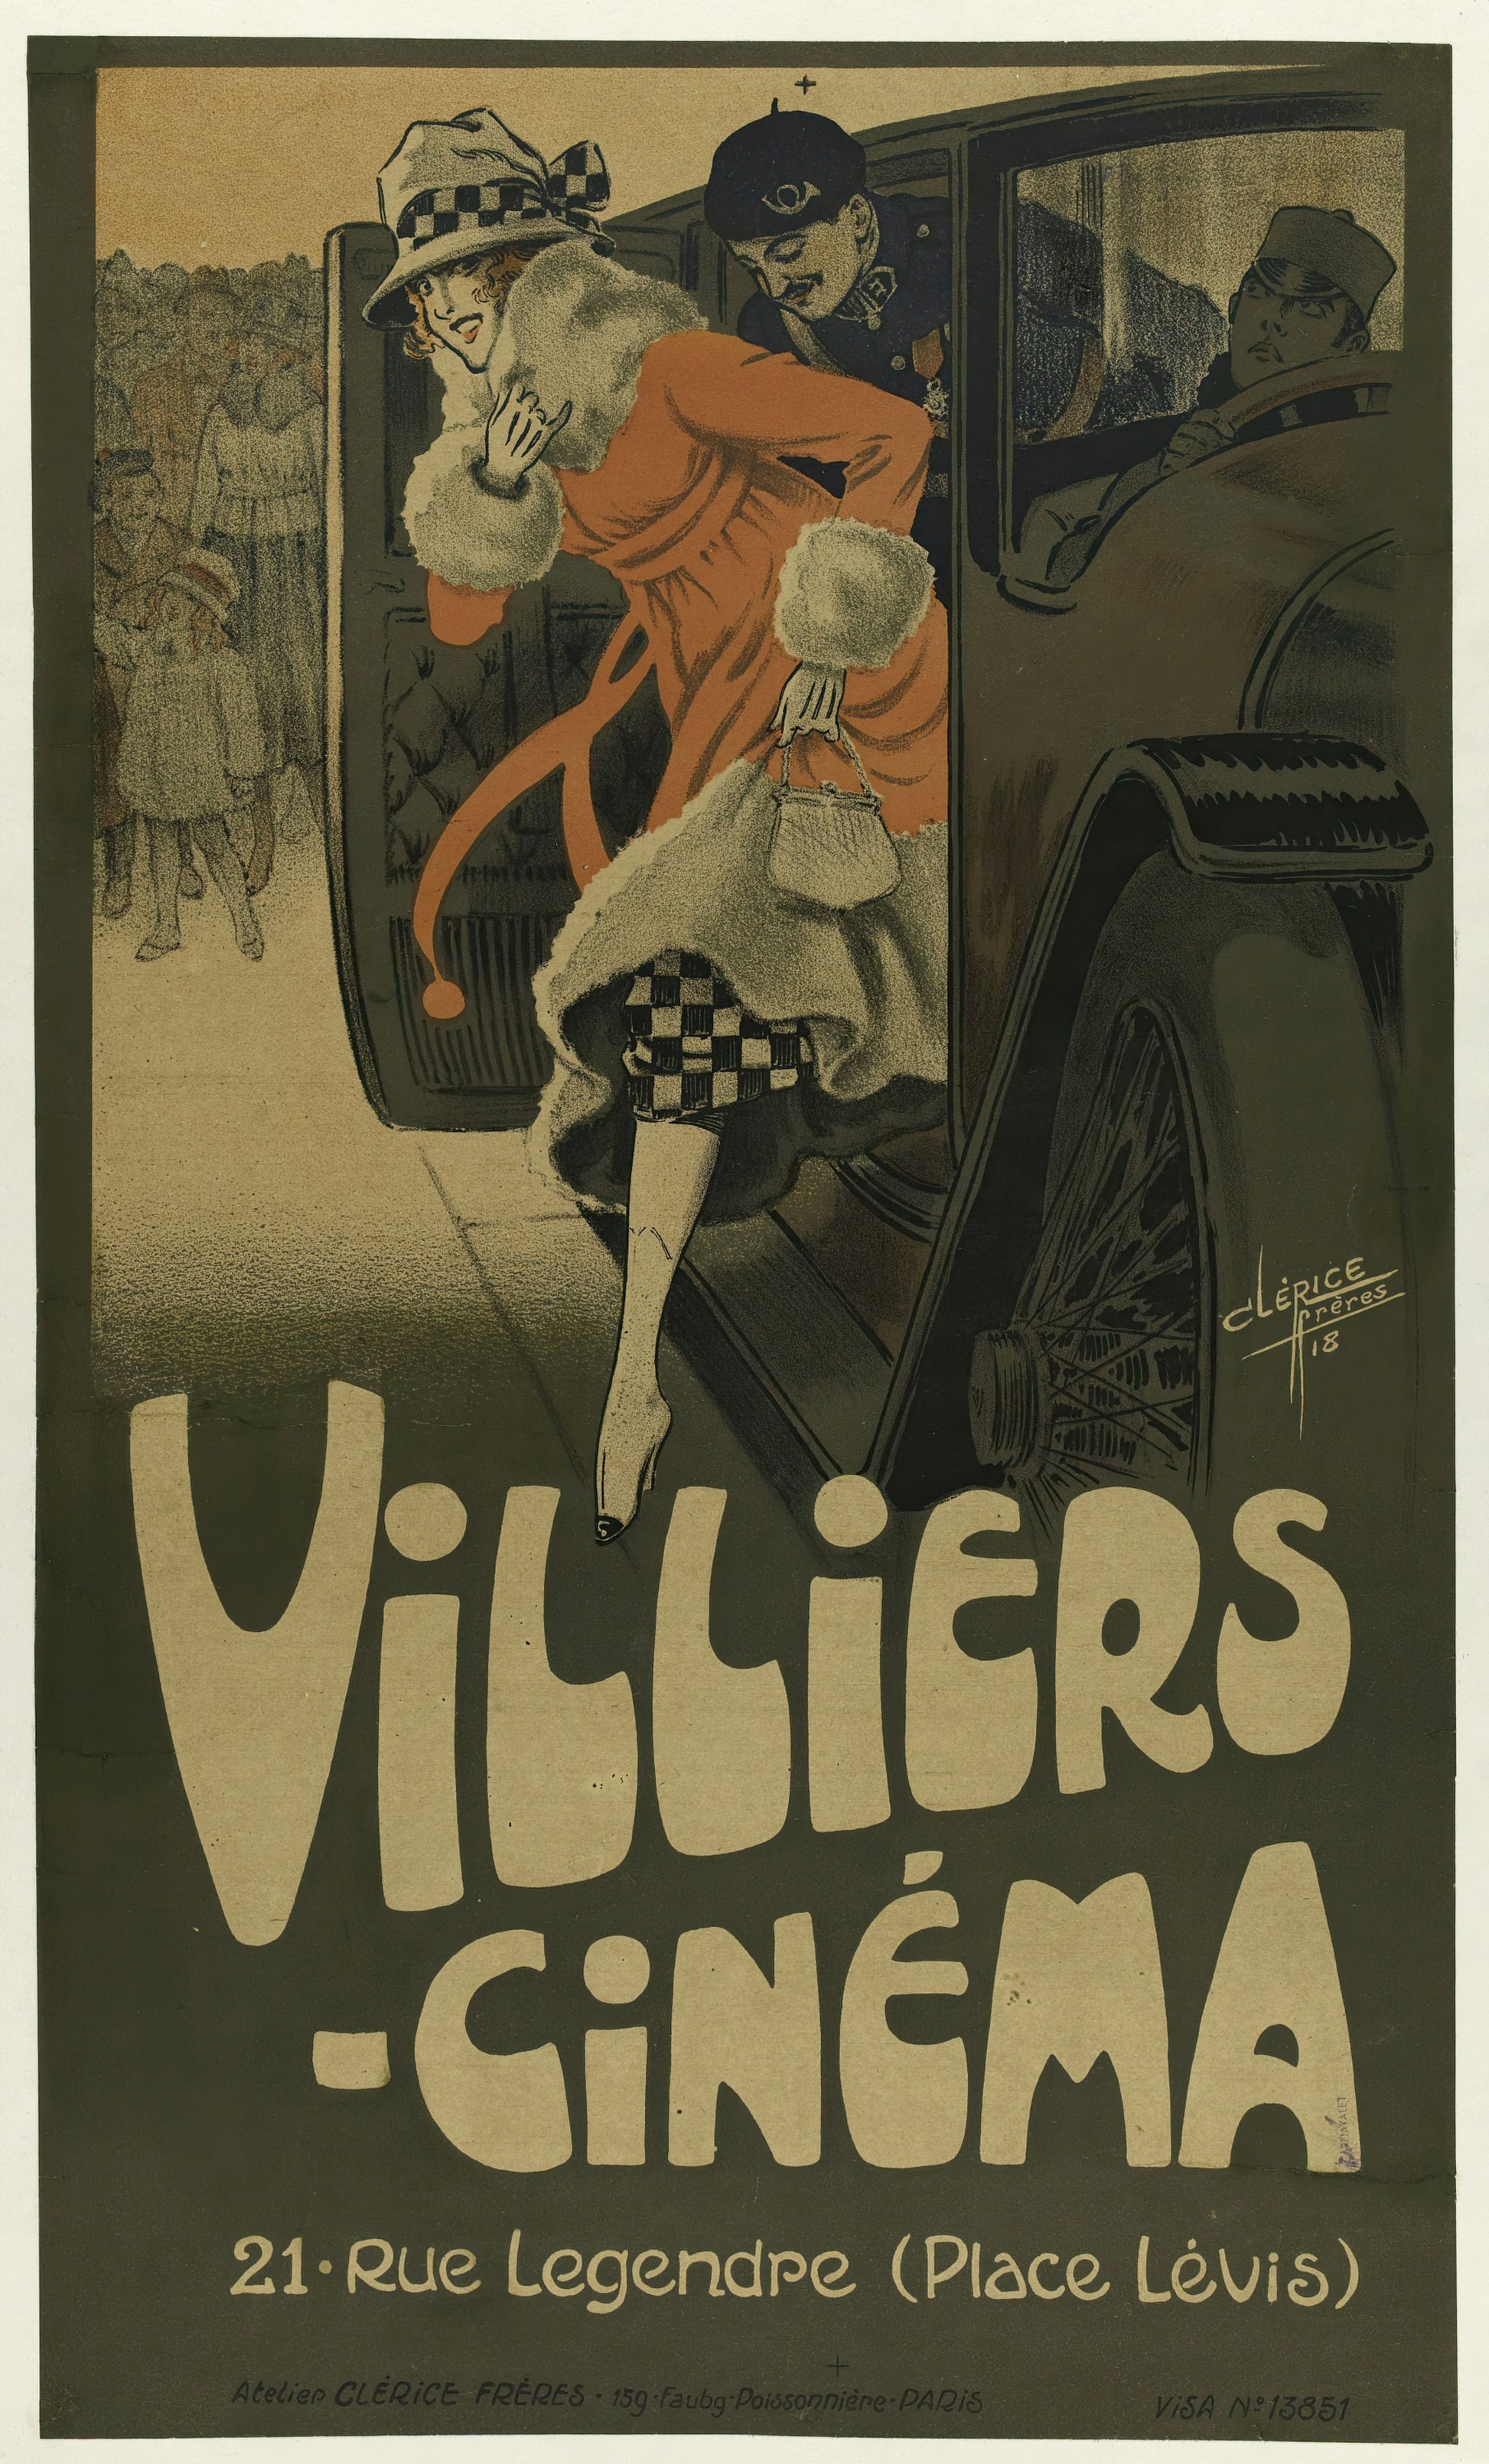 Villiers cinema poster, Paris (1900s) Posters, Prints, & Visual Artwork The Trumpet Shop   